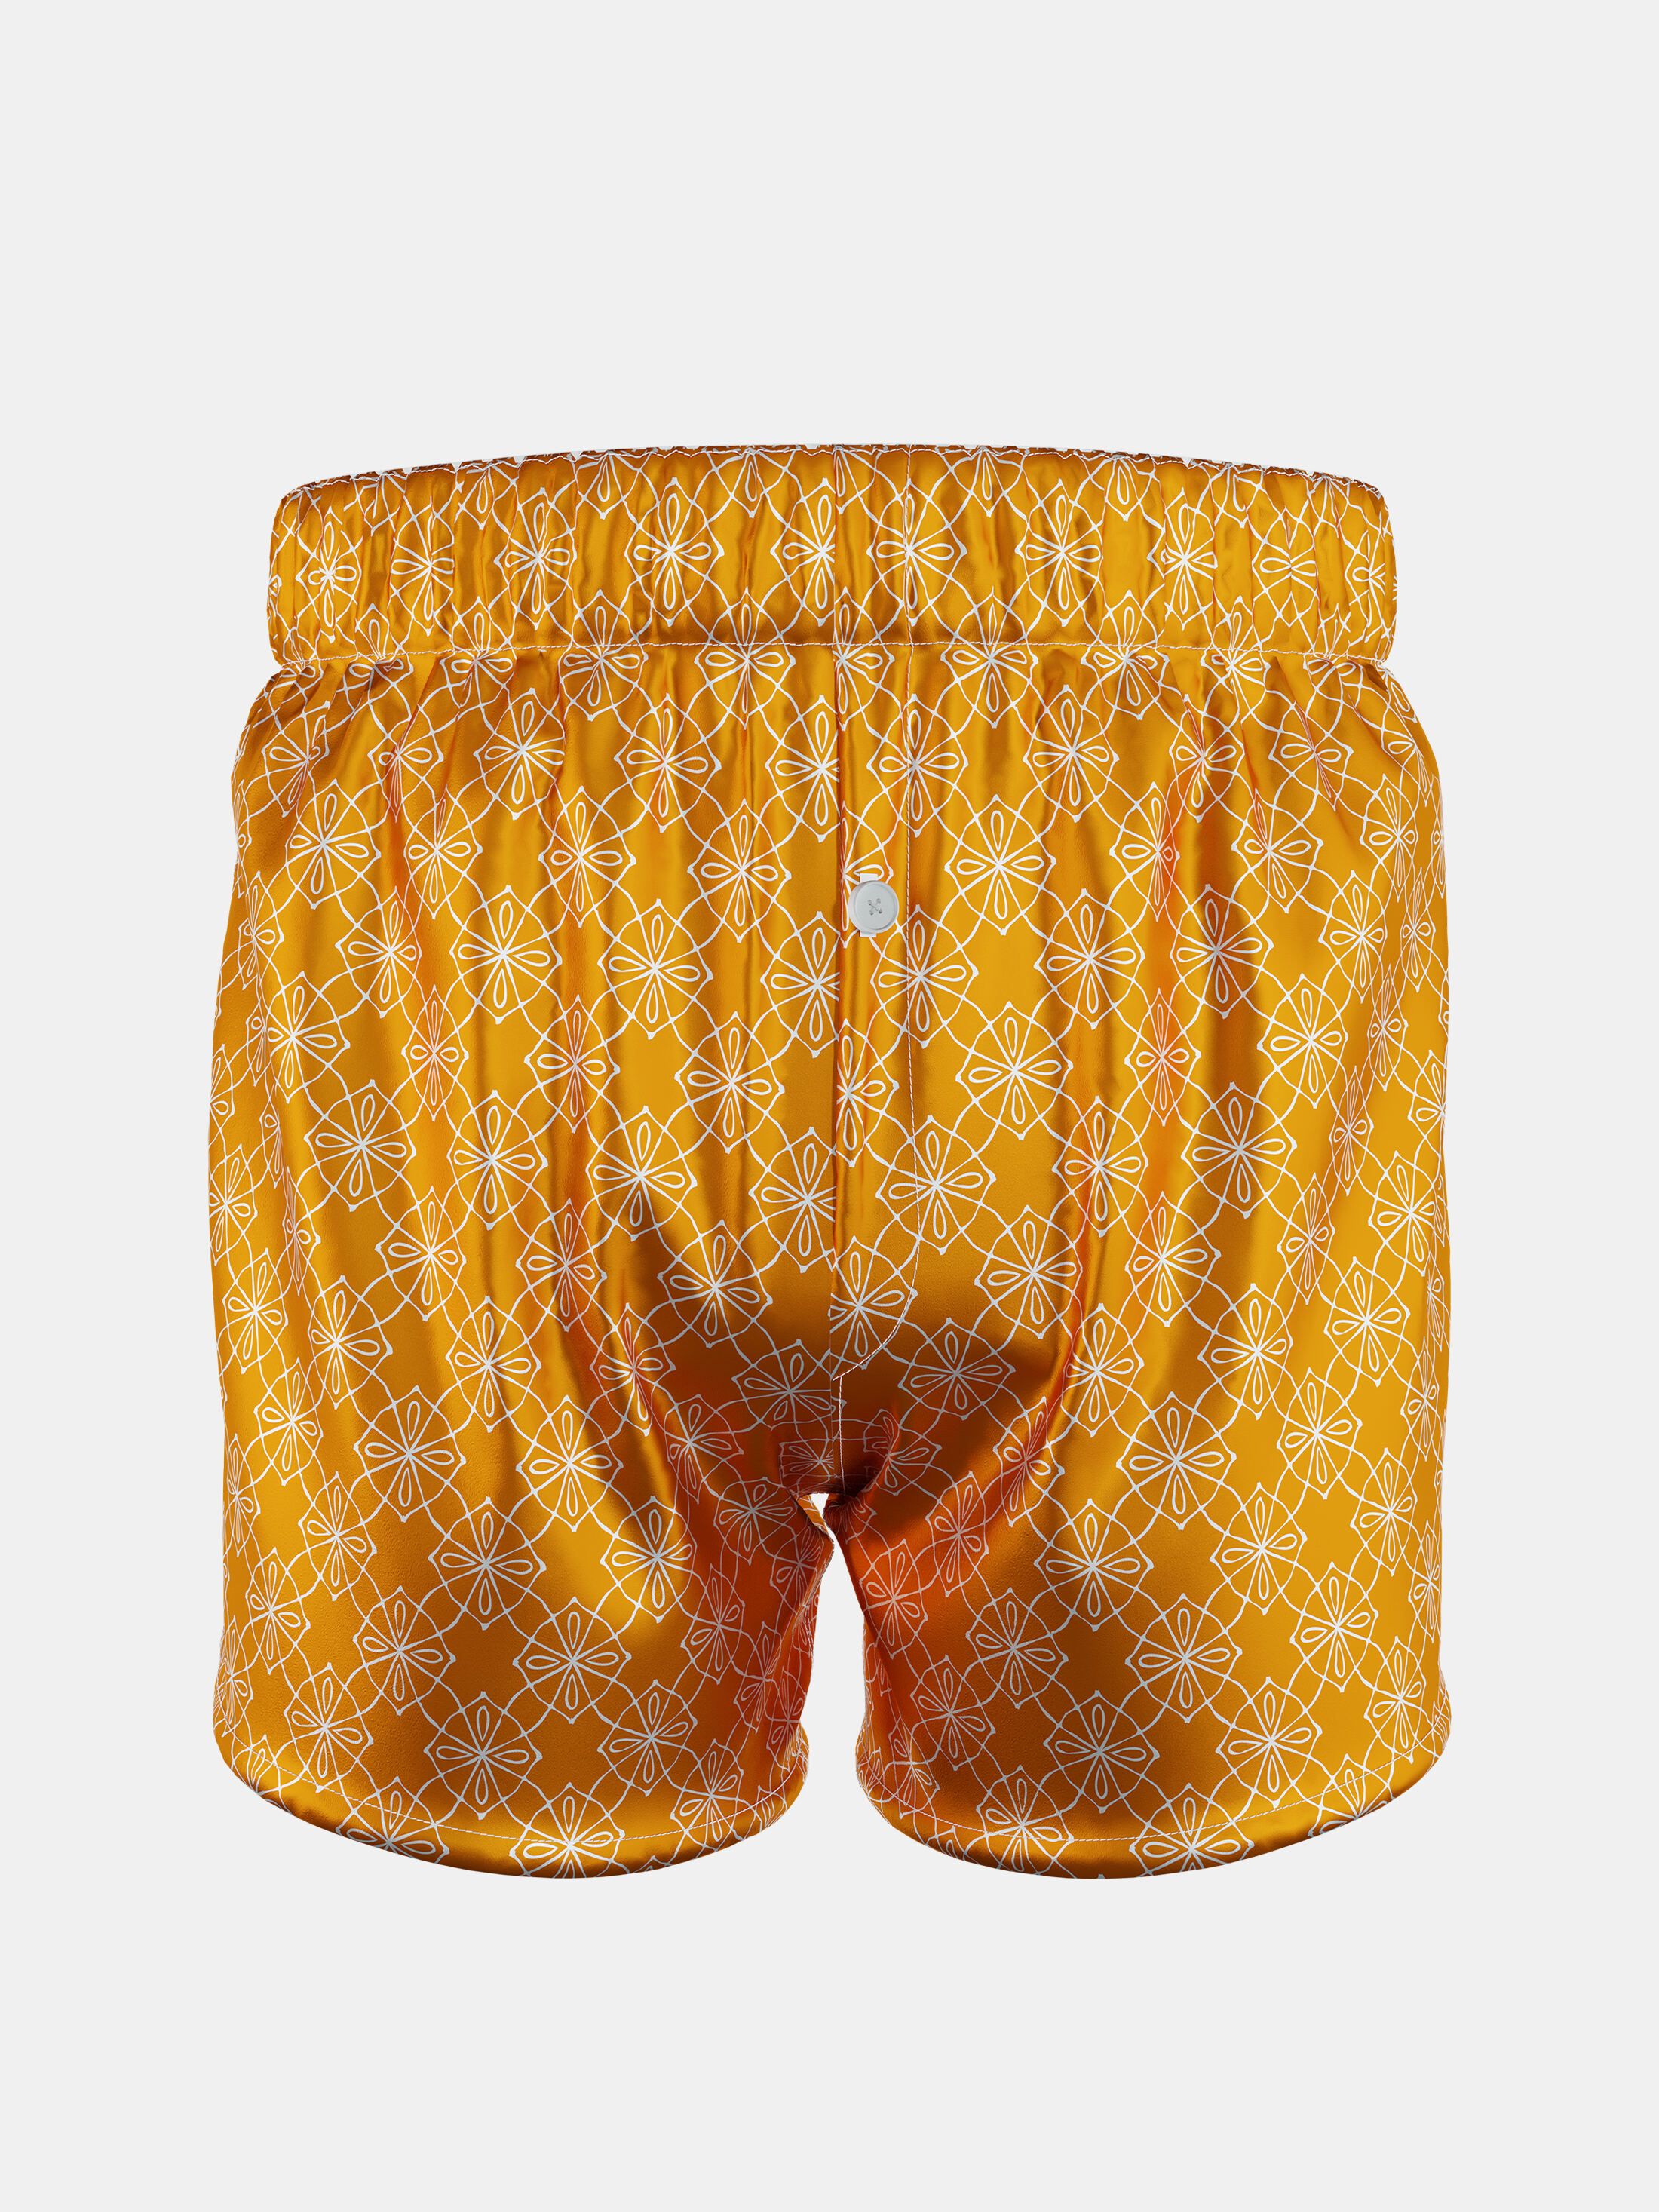 men's custom boxer shorts